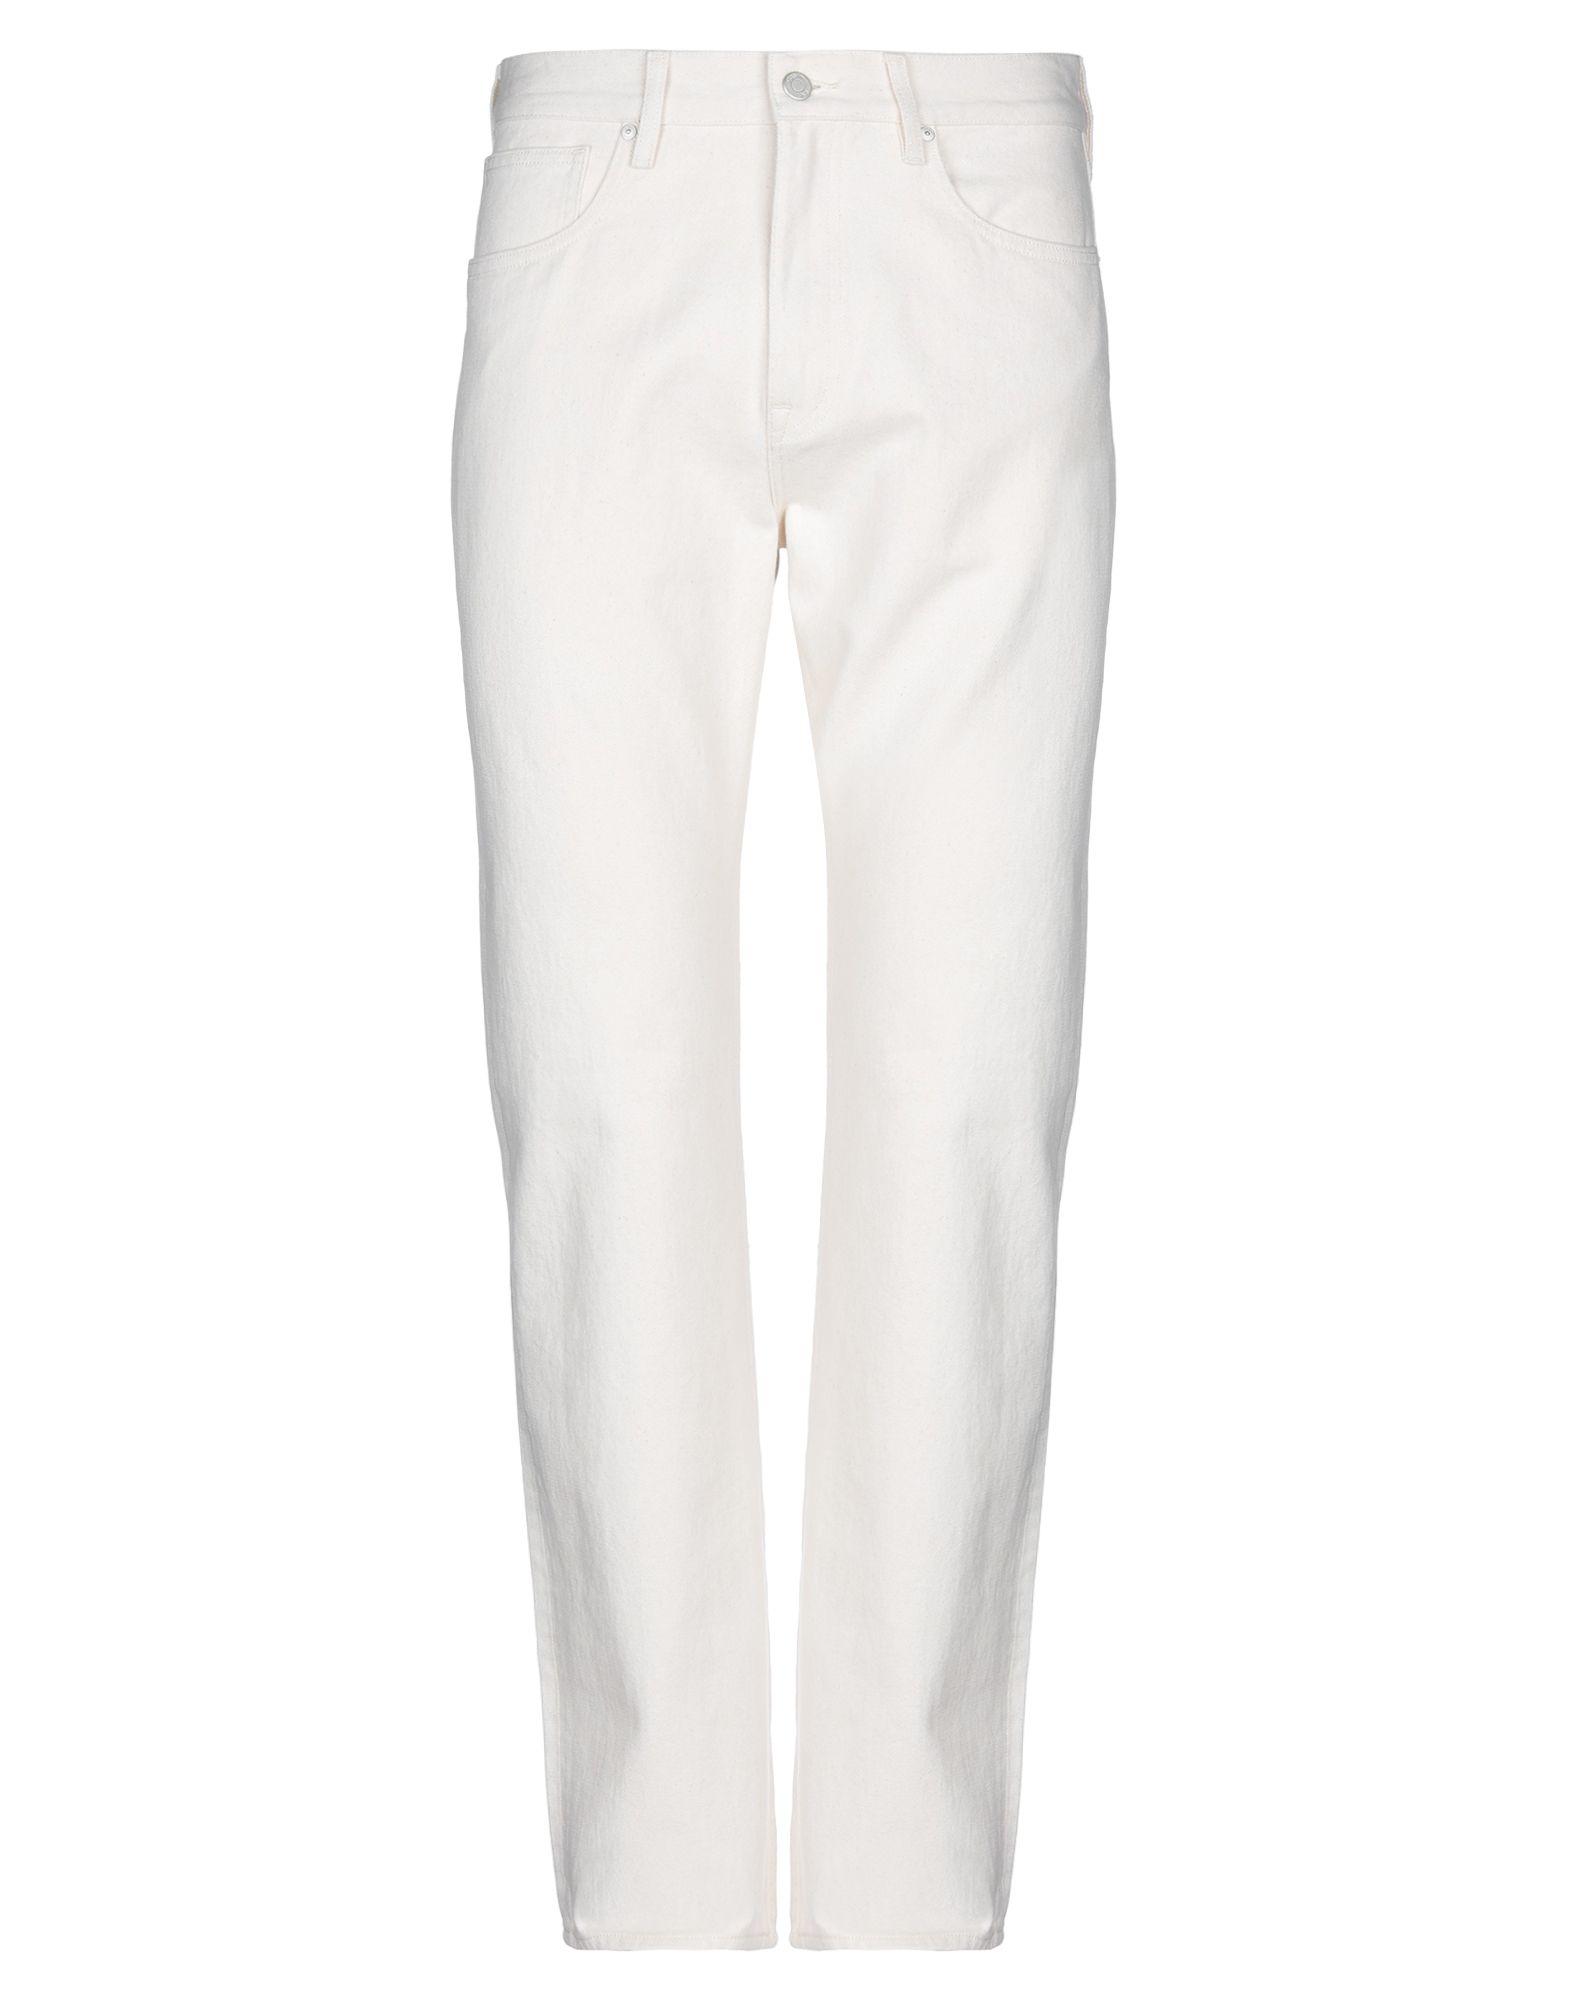 Calvin Klein Denim Pants in Ivory (White) for Men - Lyst